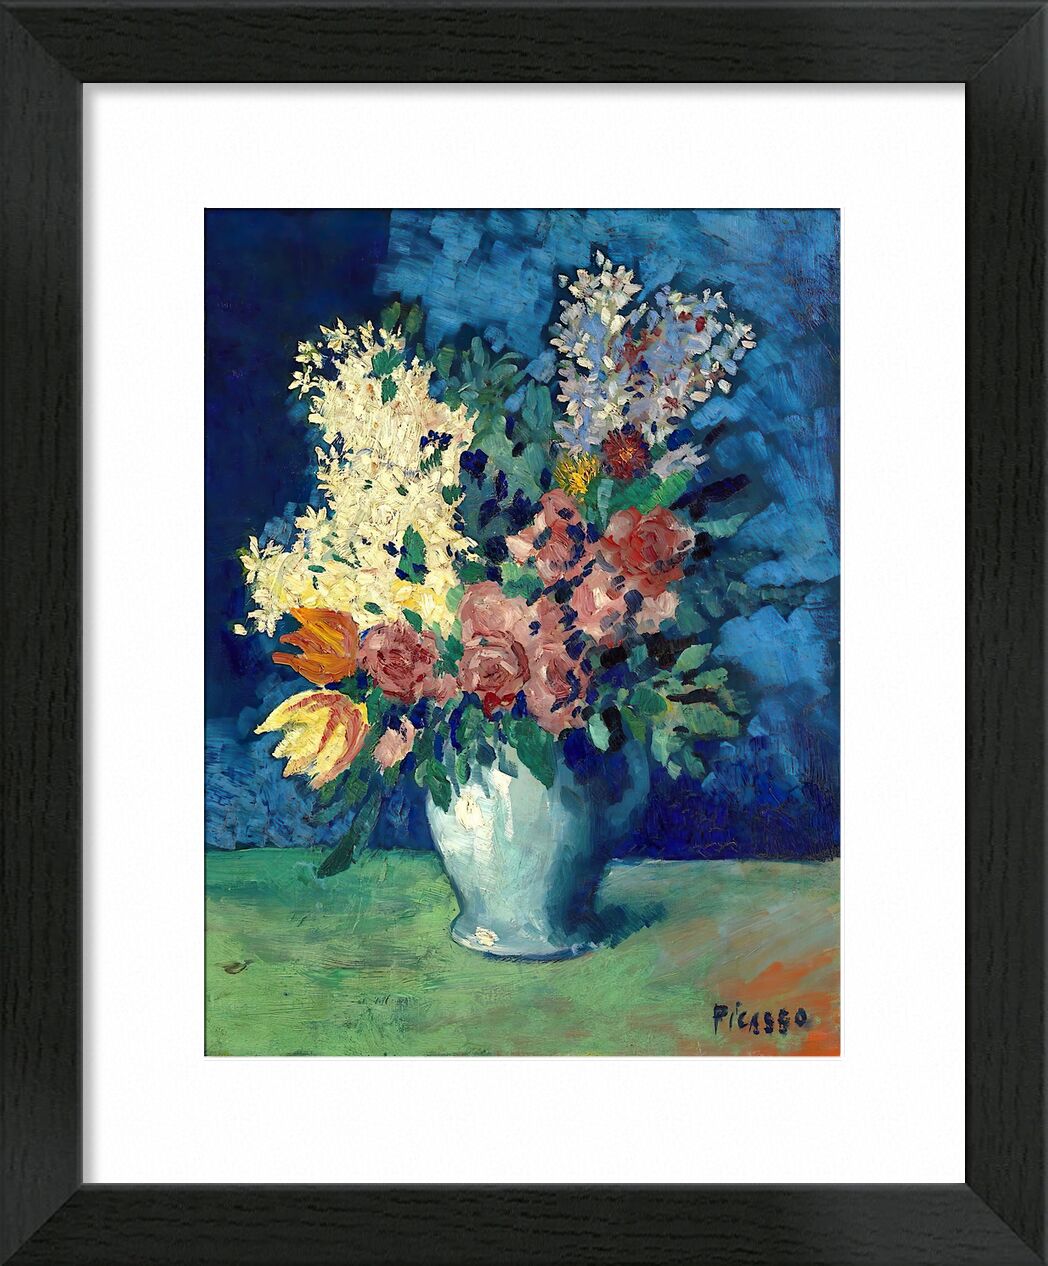 Flowers 1901 - Picasso von Bildende Kunst, Prodi Art, Picasso, Blumen, Malerei